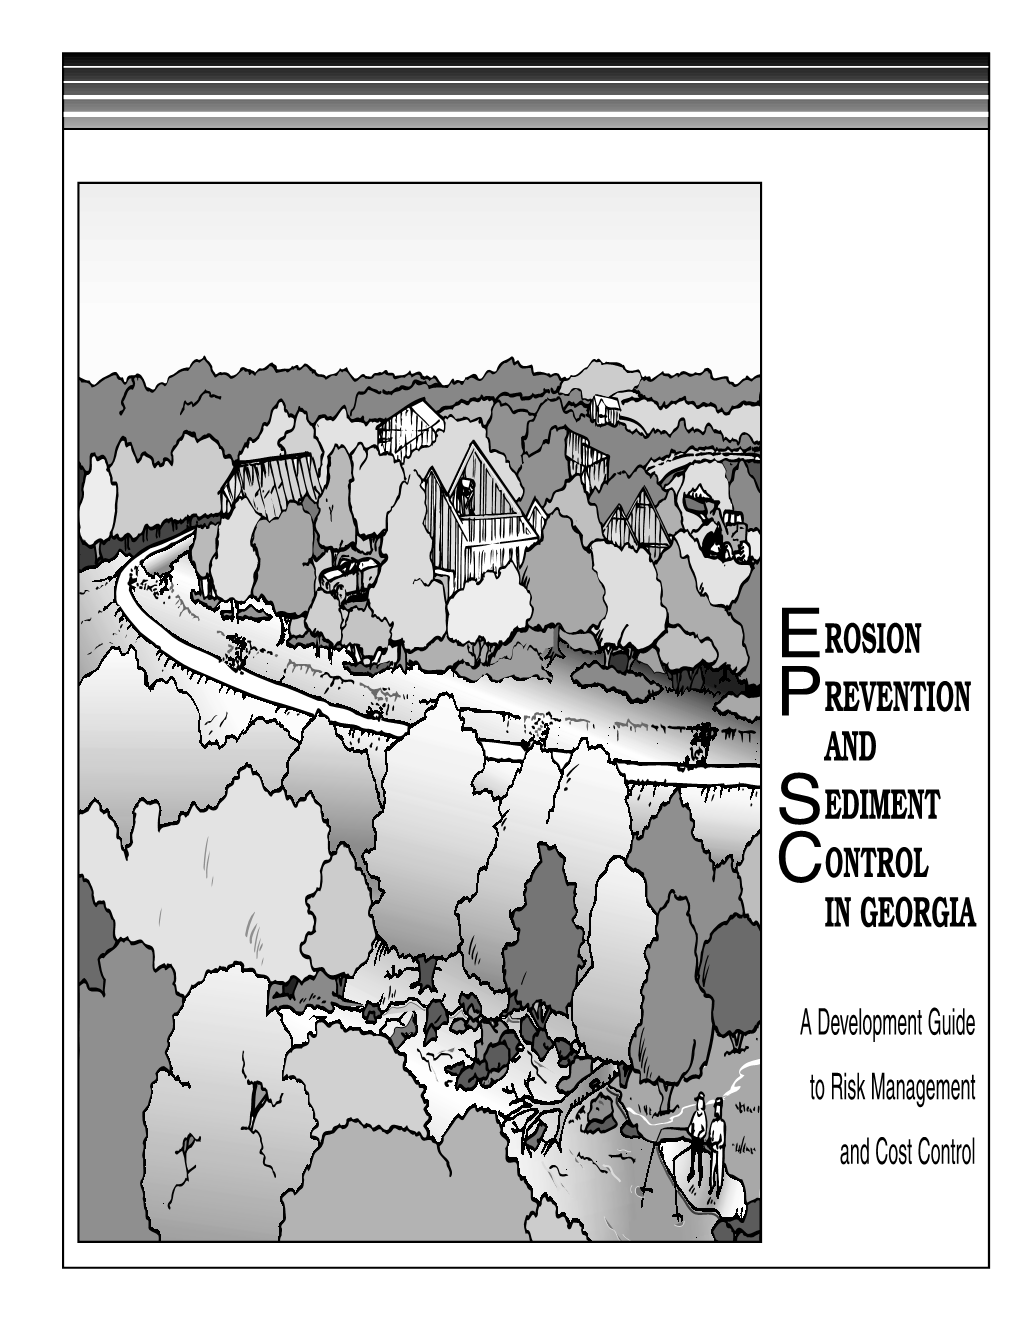 Erosion Prevention and Sediment Control in Georgia